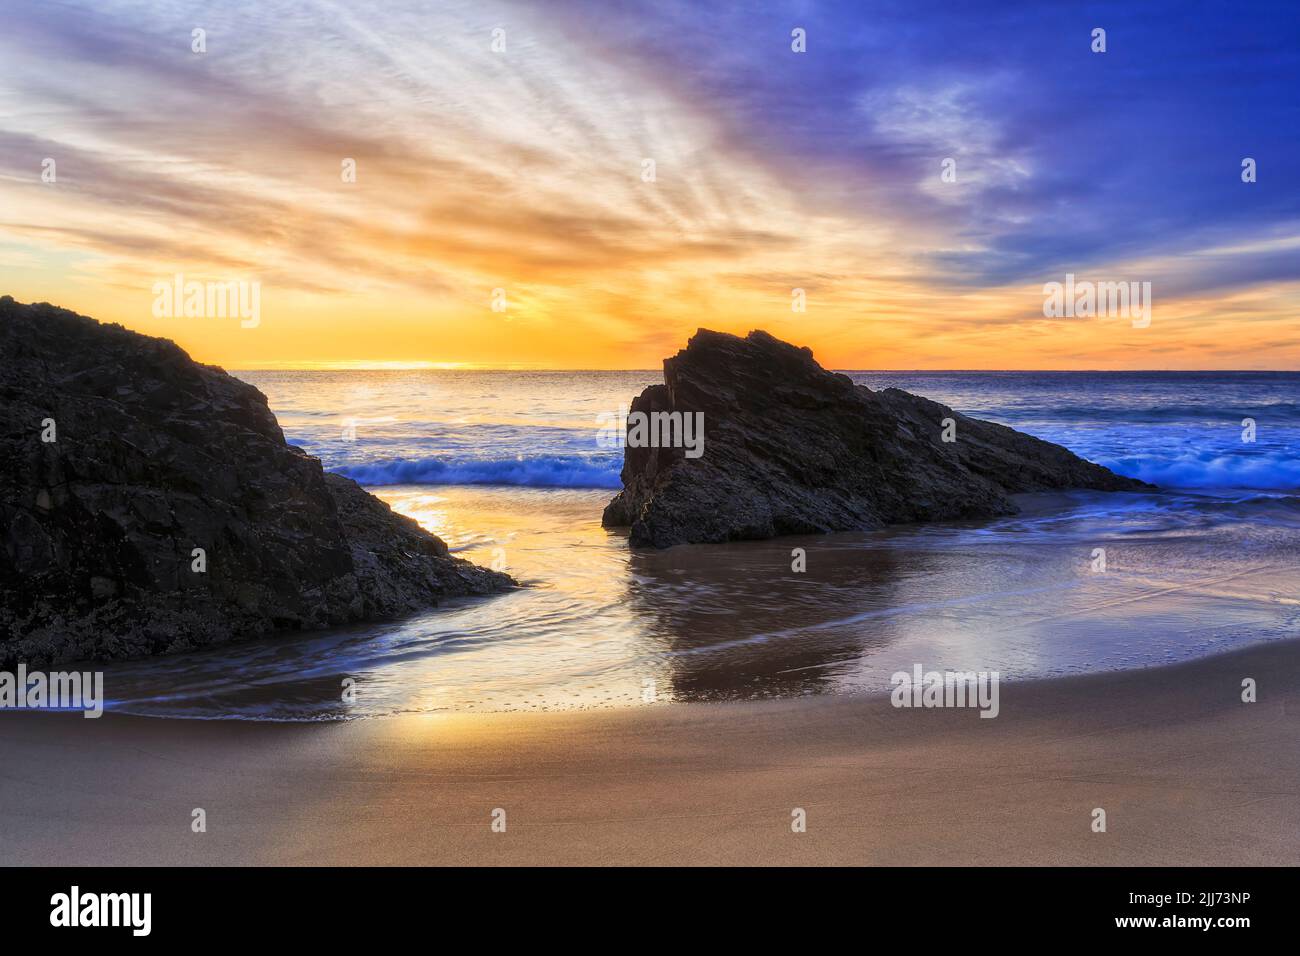 Des rochers pittoresques sur la plage de Burgess dans la ville de Forster, en Australie, sur la côte du Pacifique, à un lever de soleil coloré. Banque D'Images